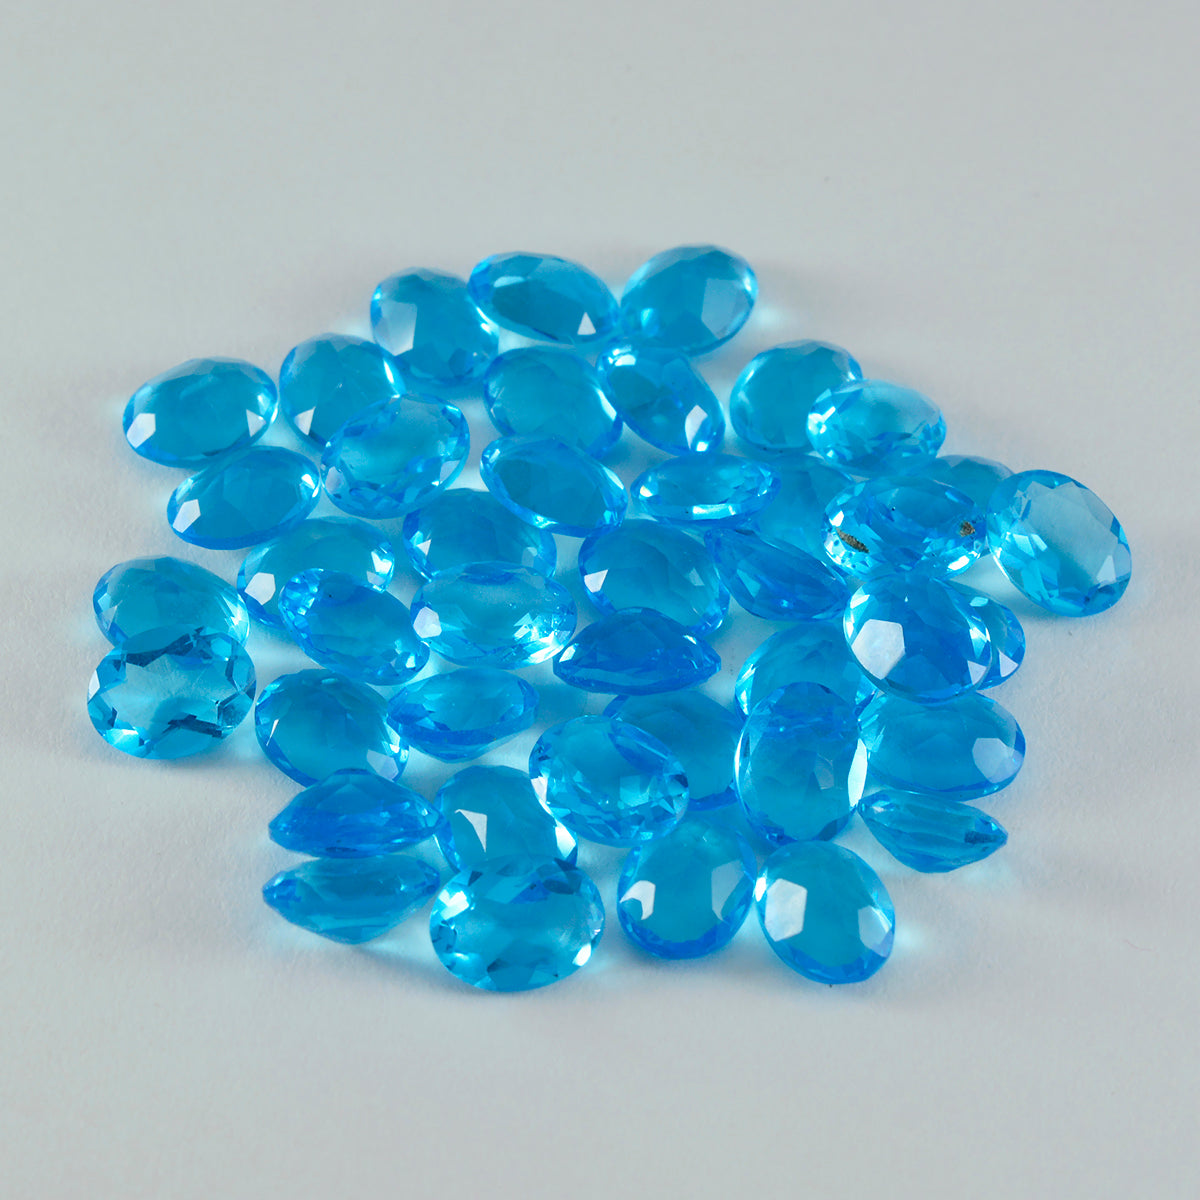 riyogems 1шт голубой топаз cz ограненный 5x7 мм драгоценные камни овальной формы хорошего качества